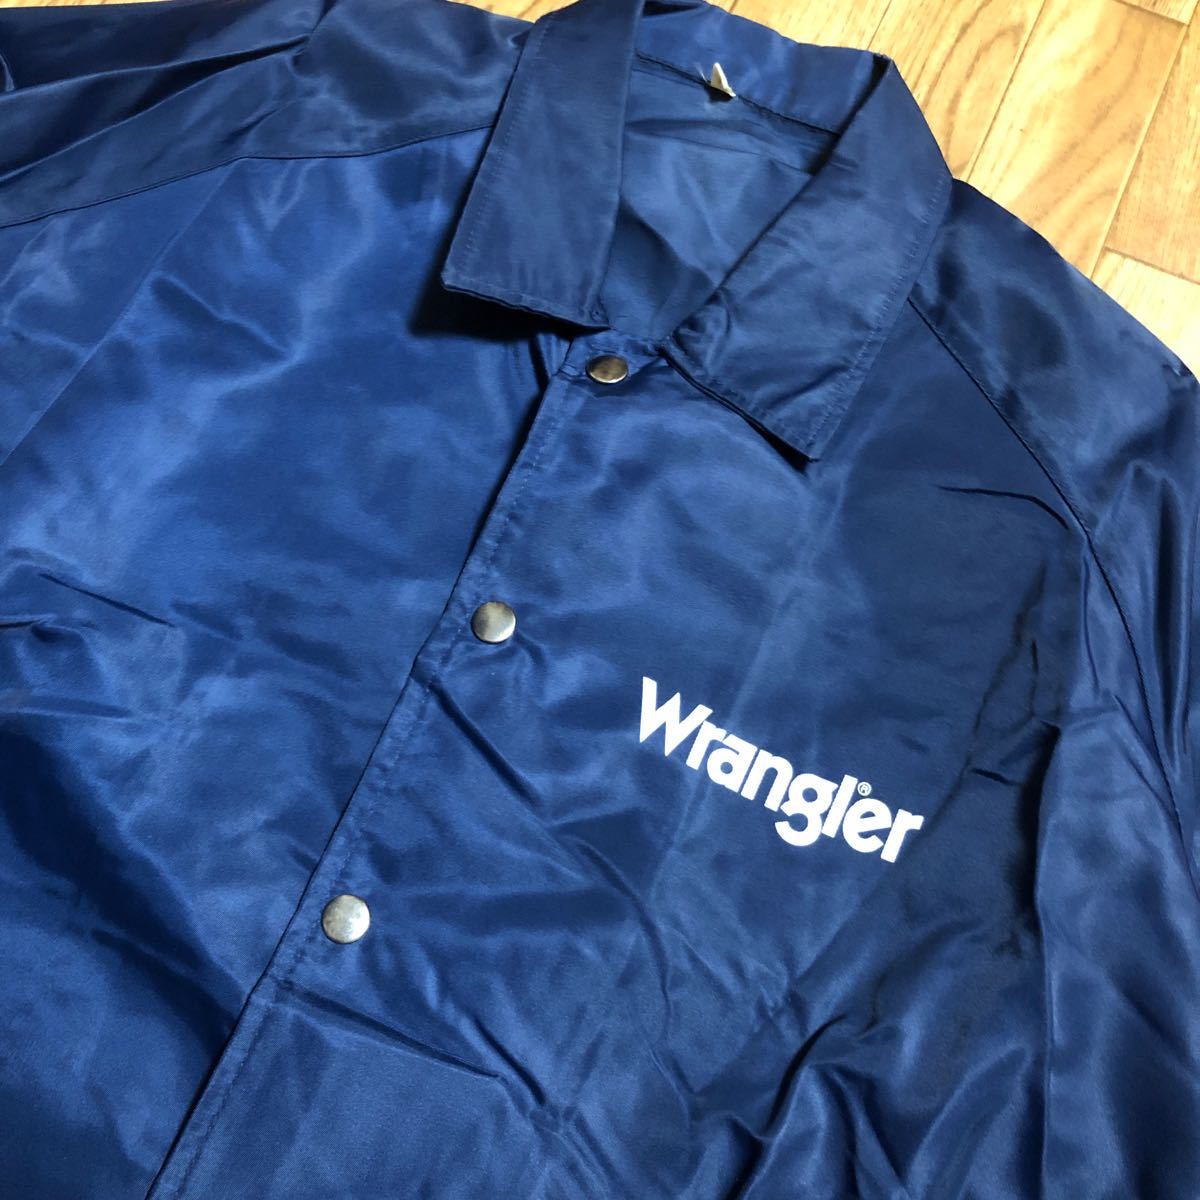 90s Wrangler コーチジャケット ナイロンジャケット 紺 フリーサイズ 古着 ラングラー スナップボタンの画像2